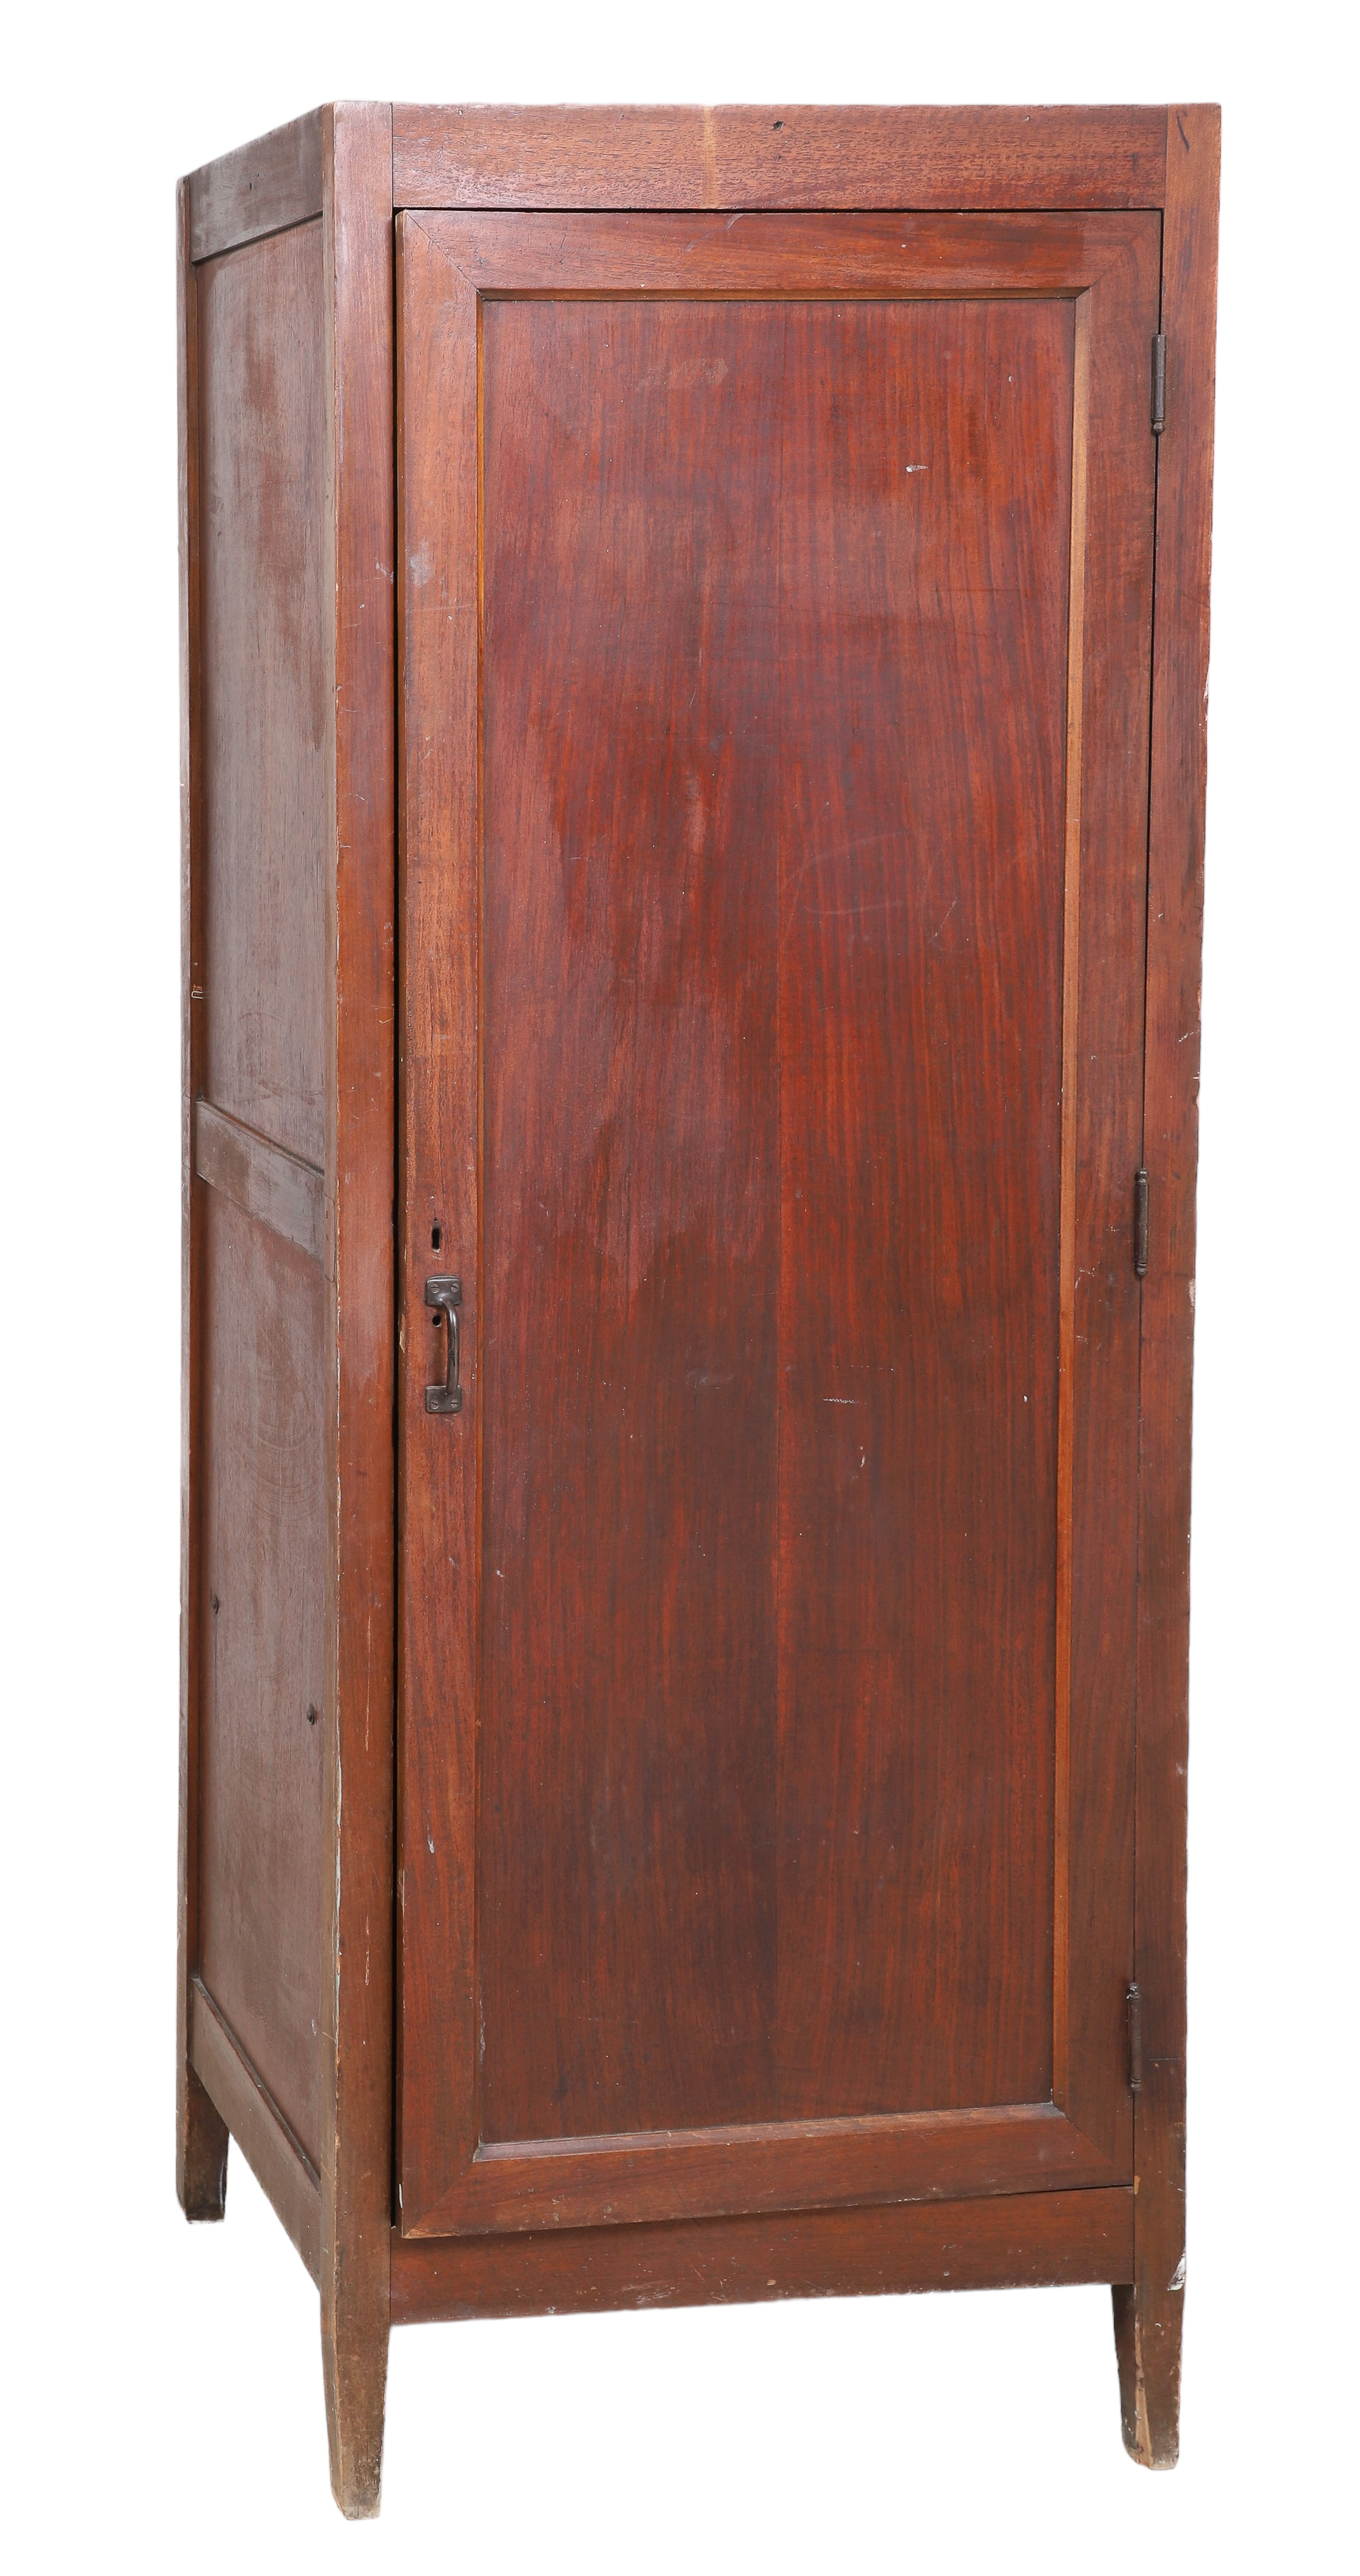 Mahogany one door cabinet, single paneled